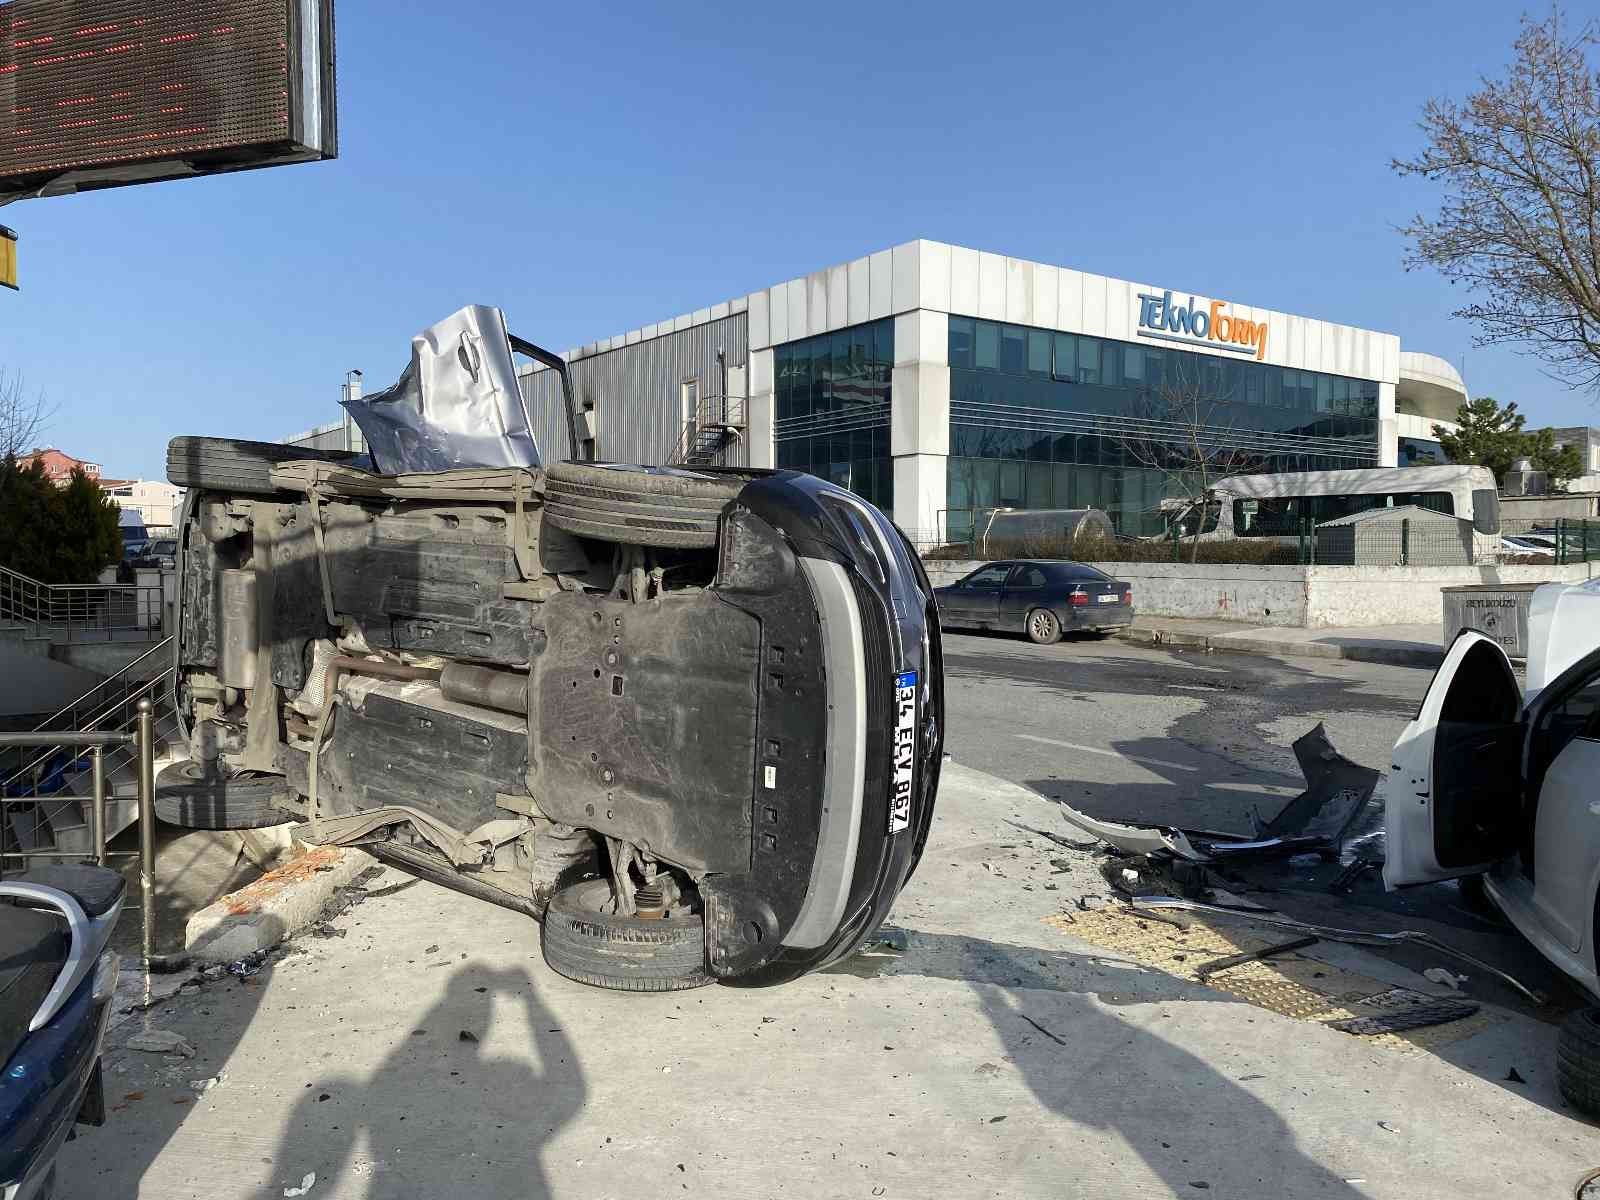 Beylikdüzü’nde otomobilin çaptığı araç yan yattı: Kaza anı kamerada #istanbul